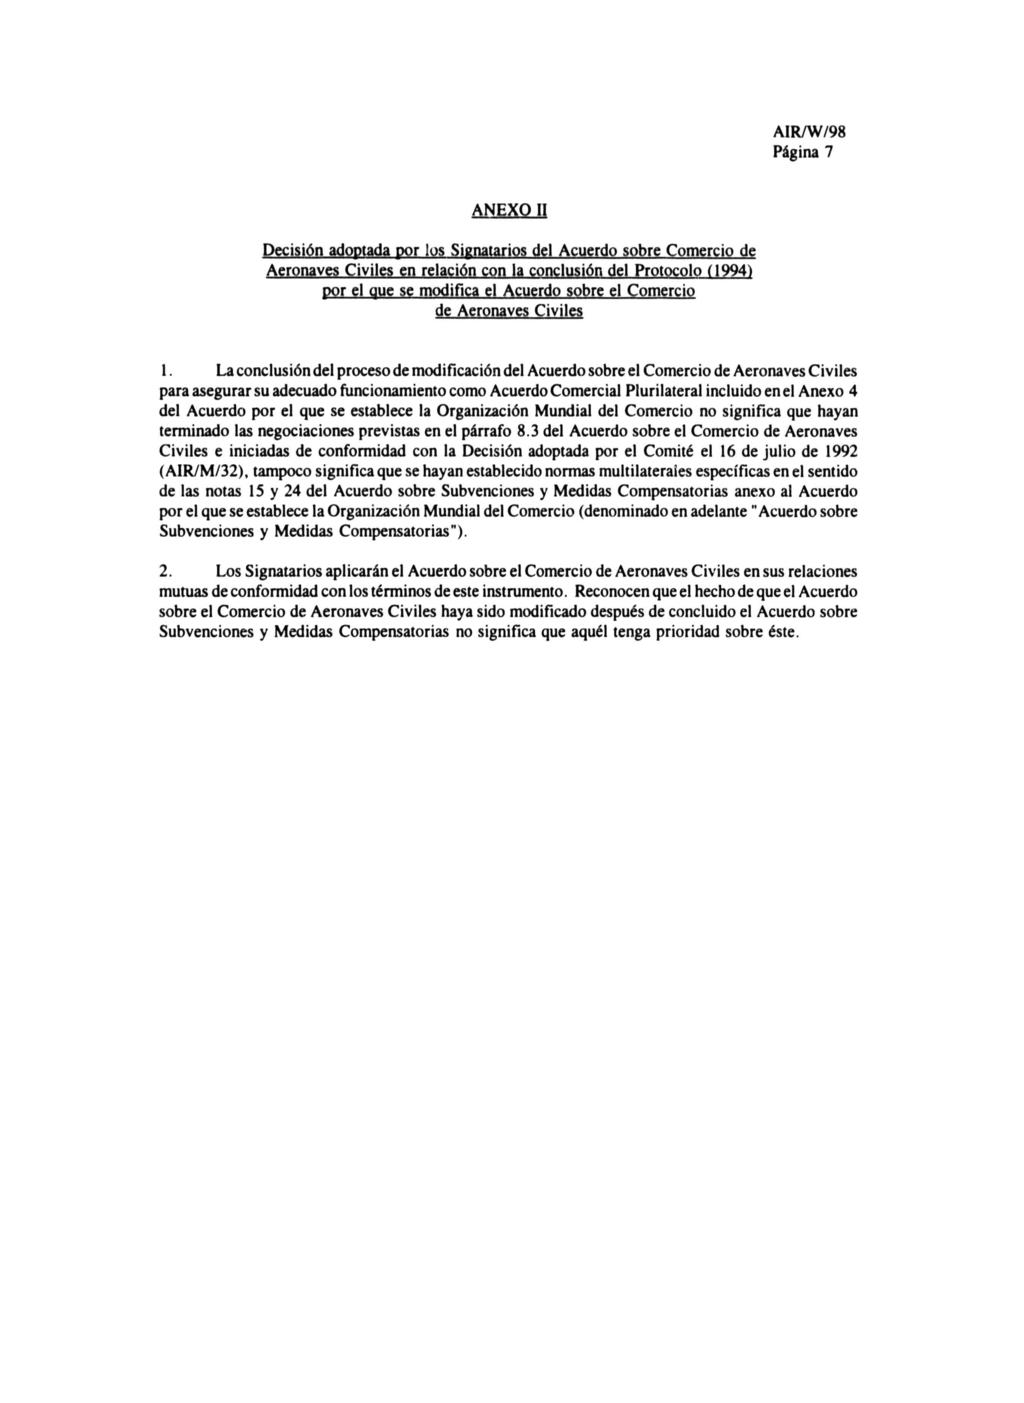 Página 7 ANEXO II Decisión adoptada por los Signatarios dei Acuerdo sobre Comercio de Aeronaves Civiles en relación con la conclusión dei Protocolo (1994) por el que se modifica el Acuerdo sobre el